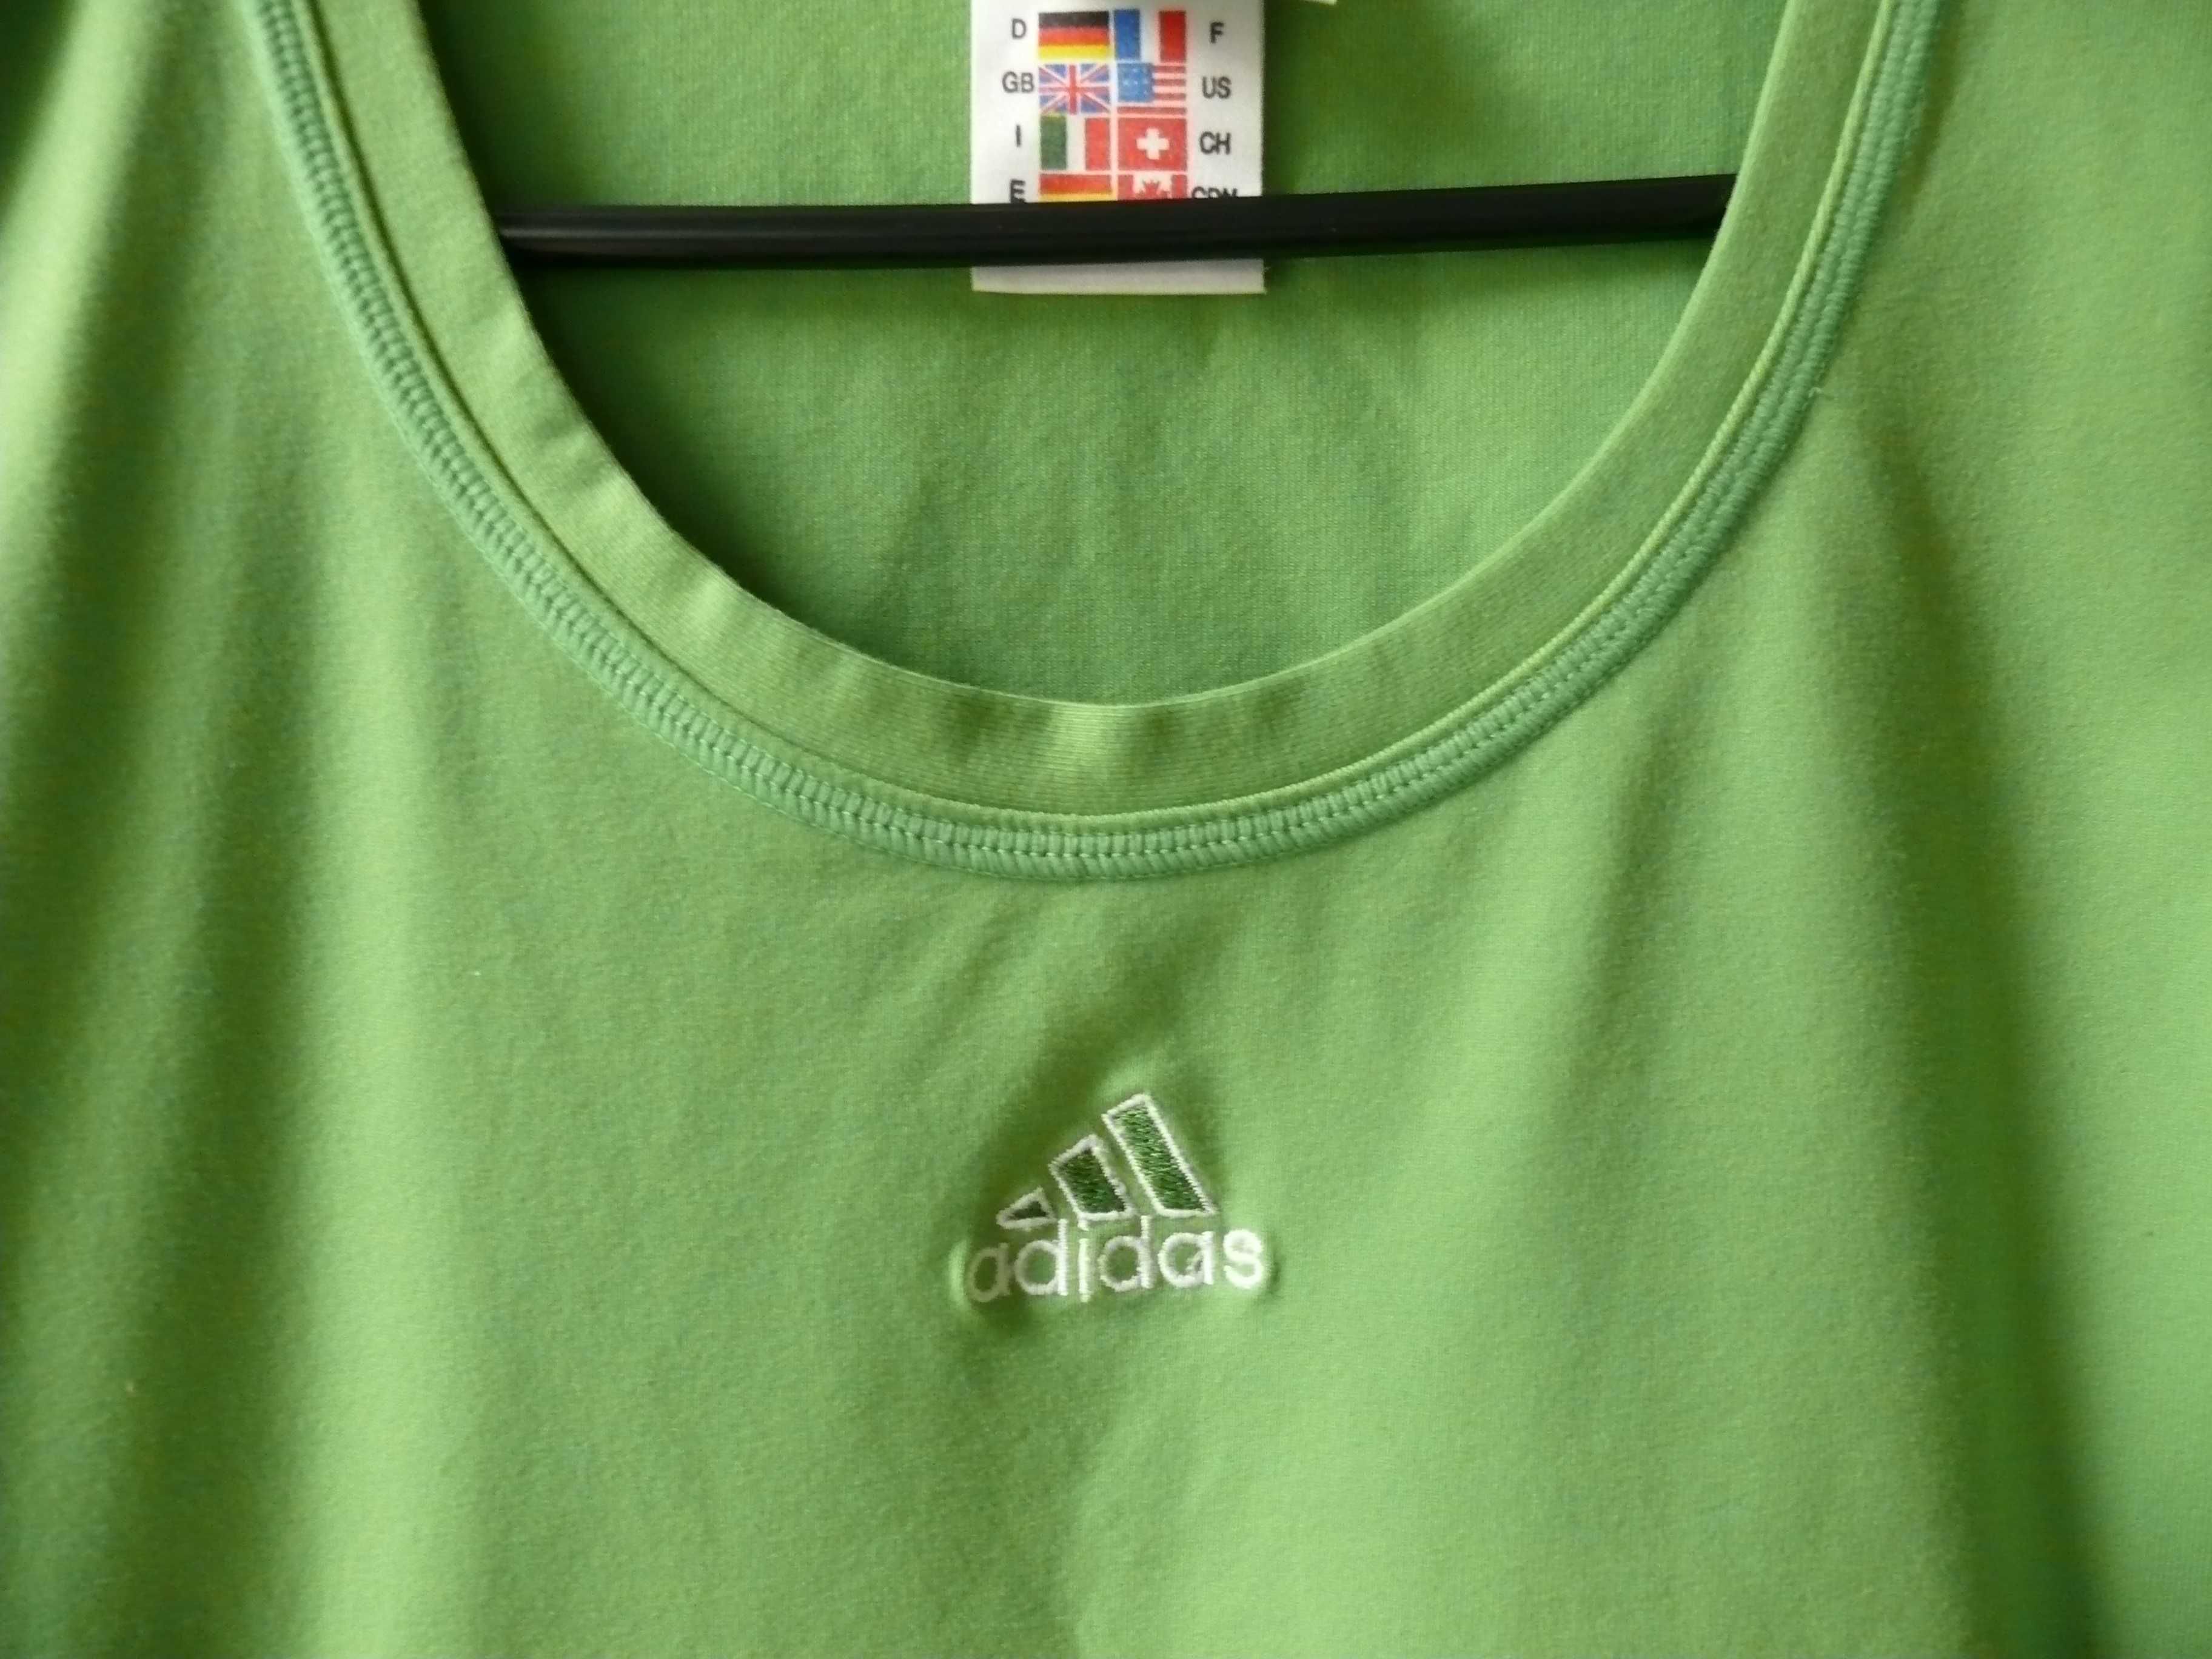 Damski t-shirt sportowy "Adidas" roz,M